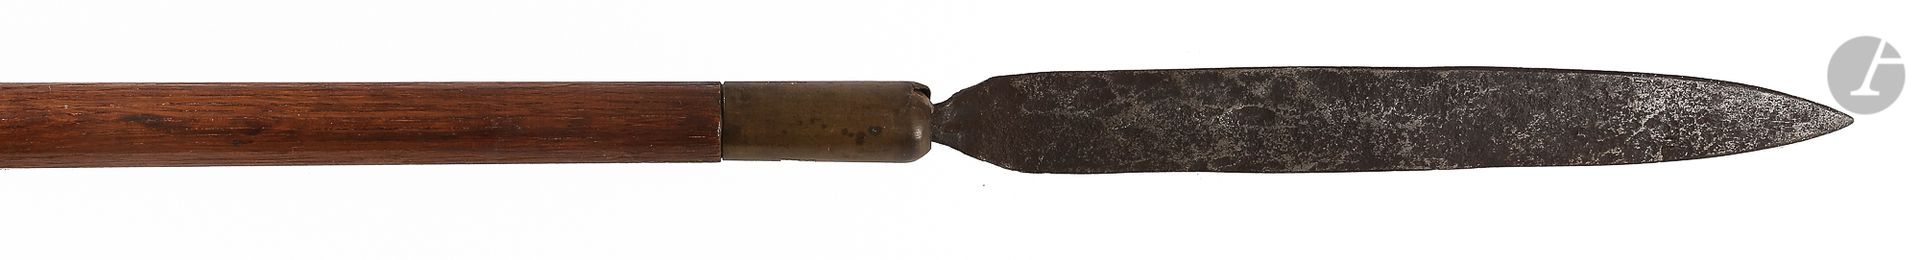 Null 矛头

锻铁材质，有中线边缘

铁的长度：37厘米 - 总长度：200厘米

挖掘件安装在带铜套的木轴上。